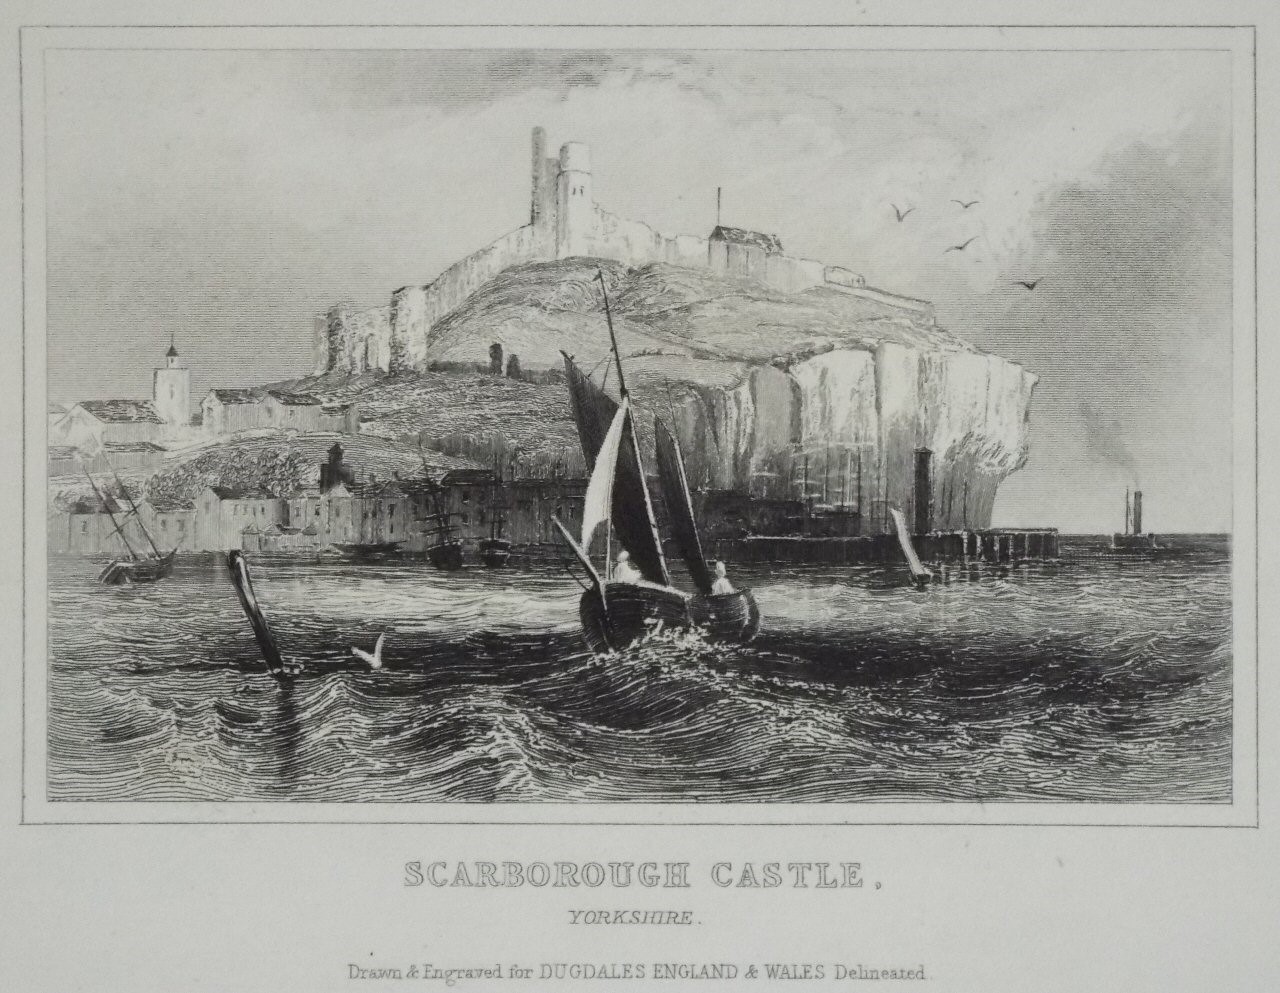 Print - Scarborough Castle, Yorkshire.